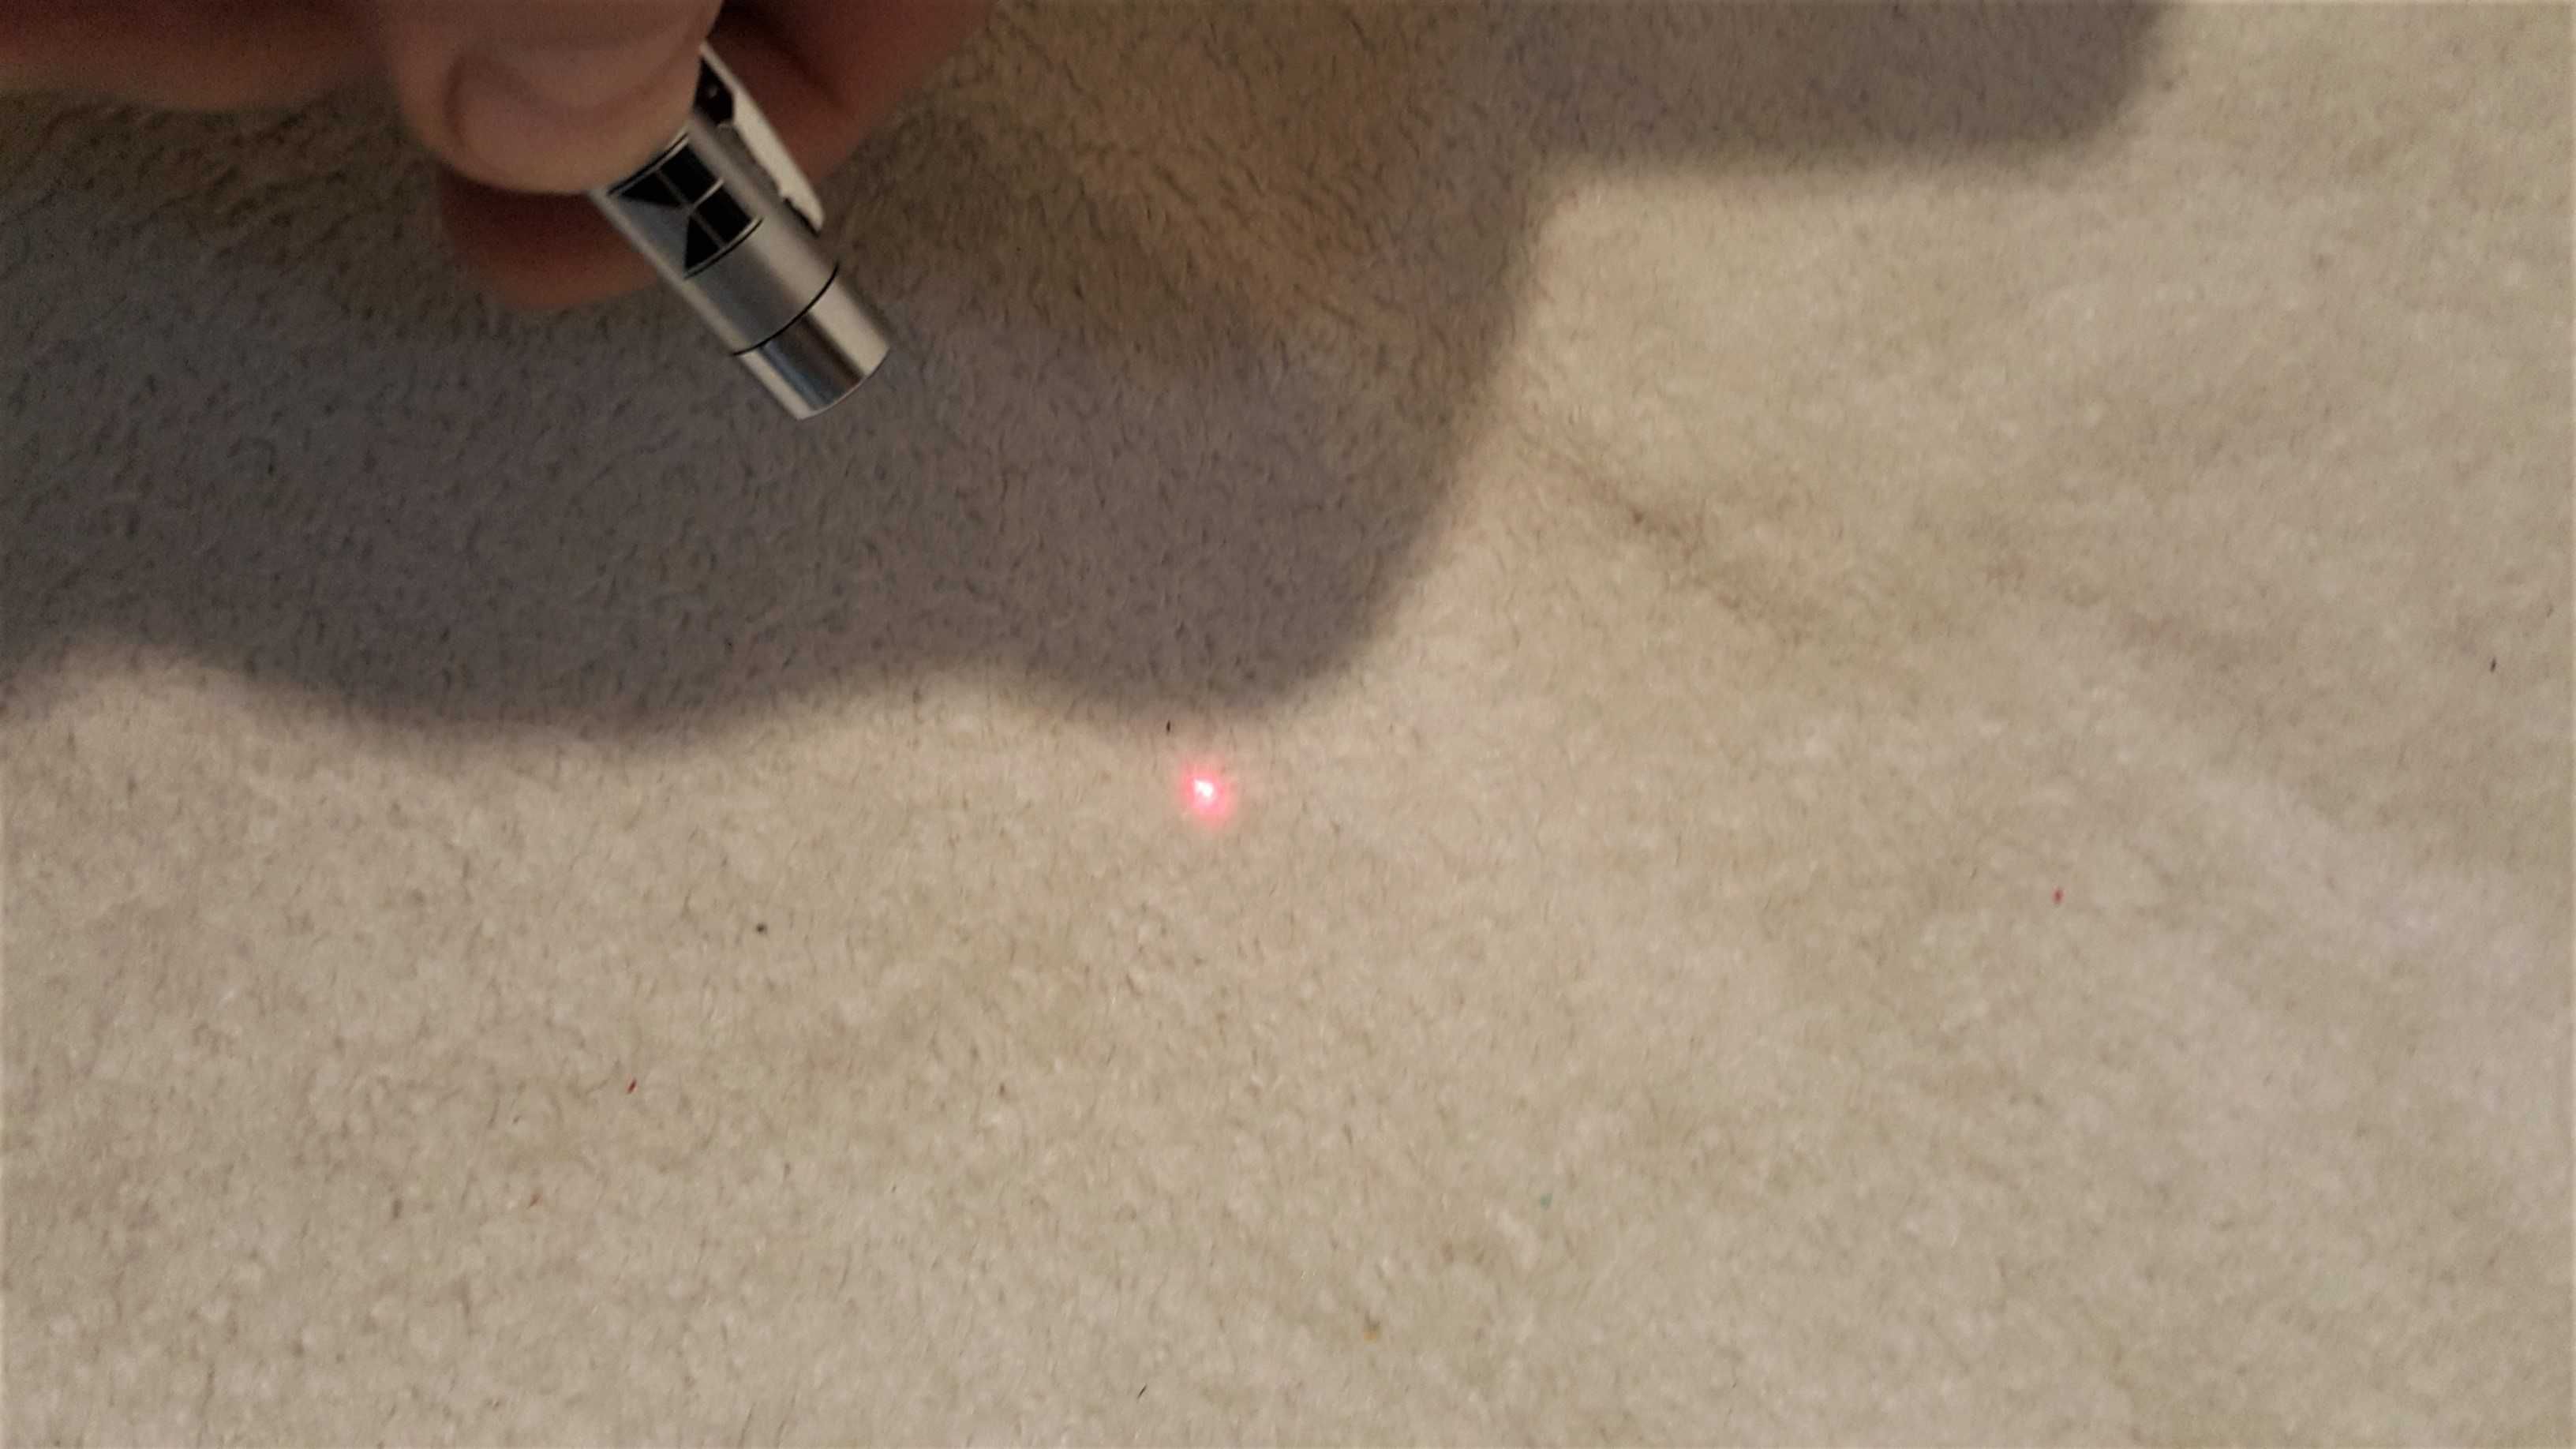 Indicator cu laser point + telescopic